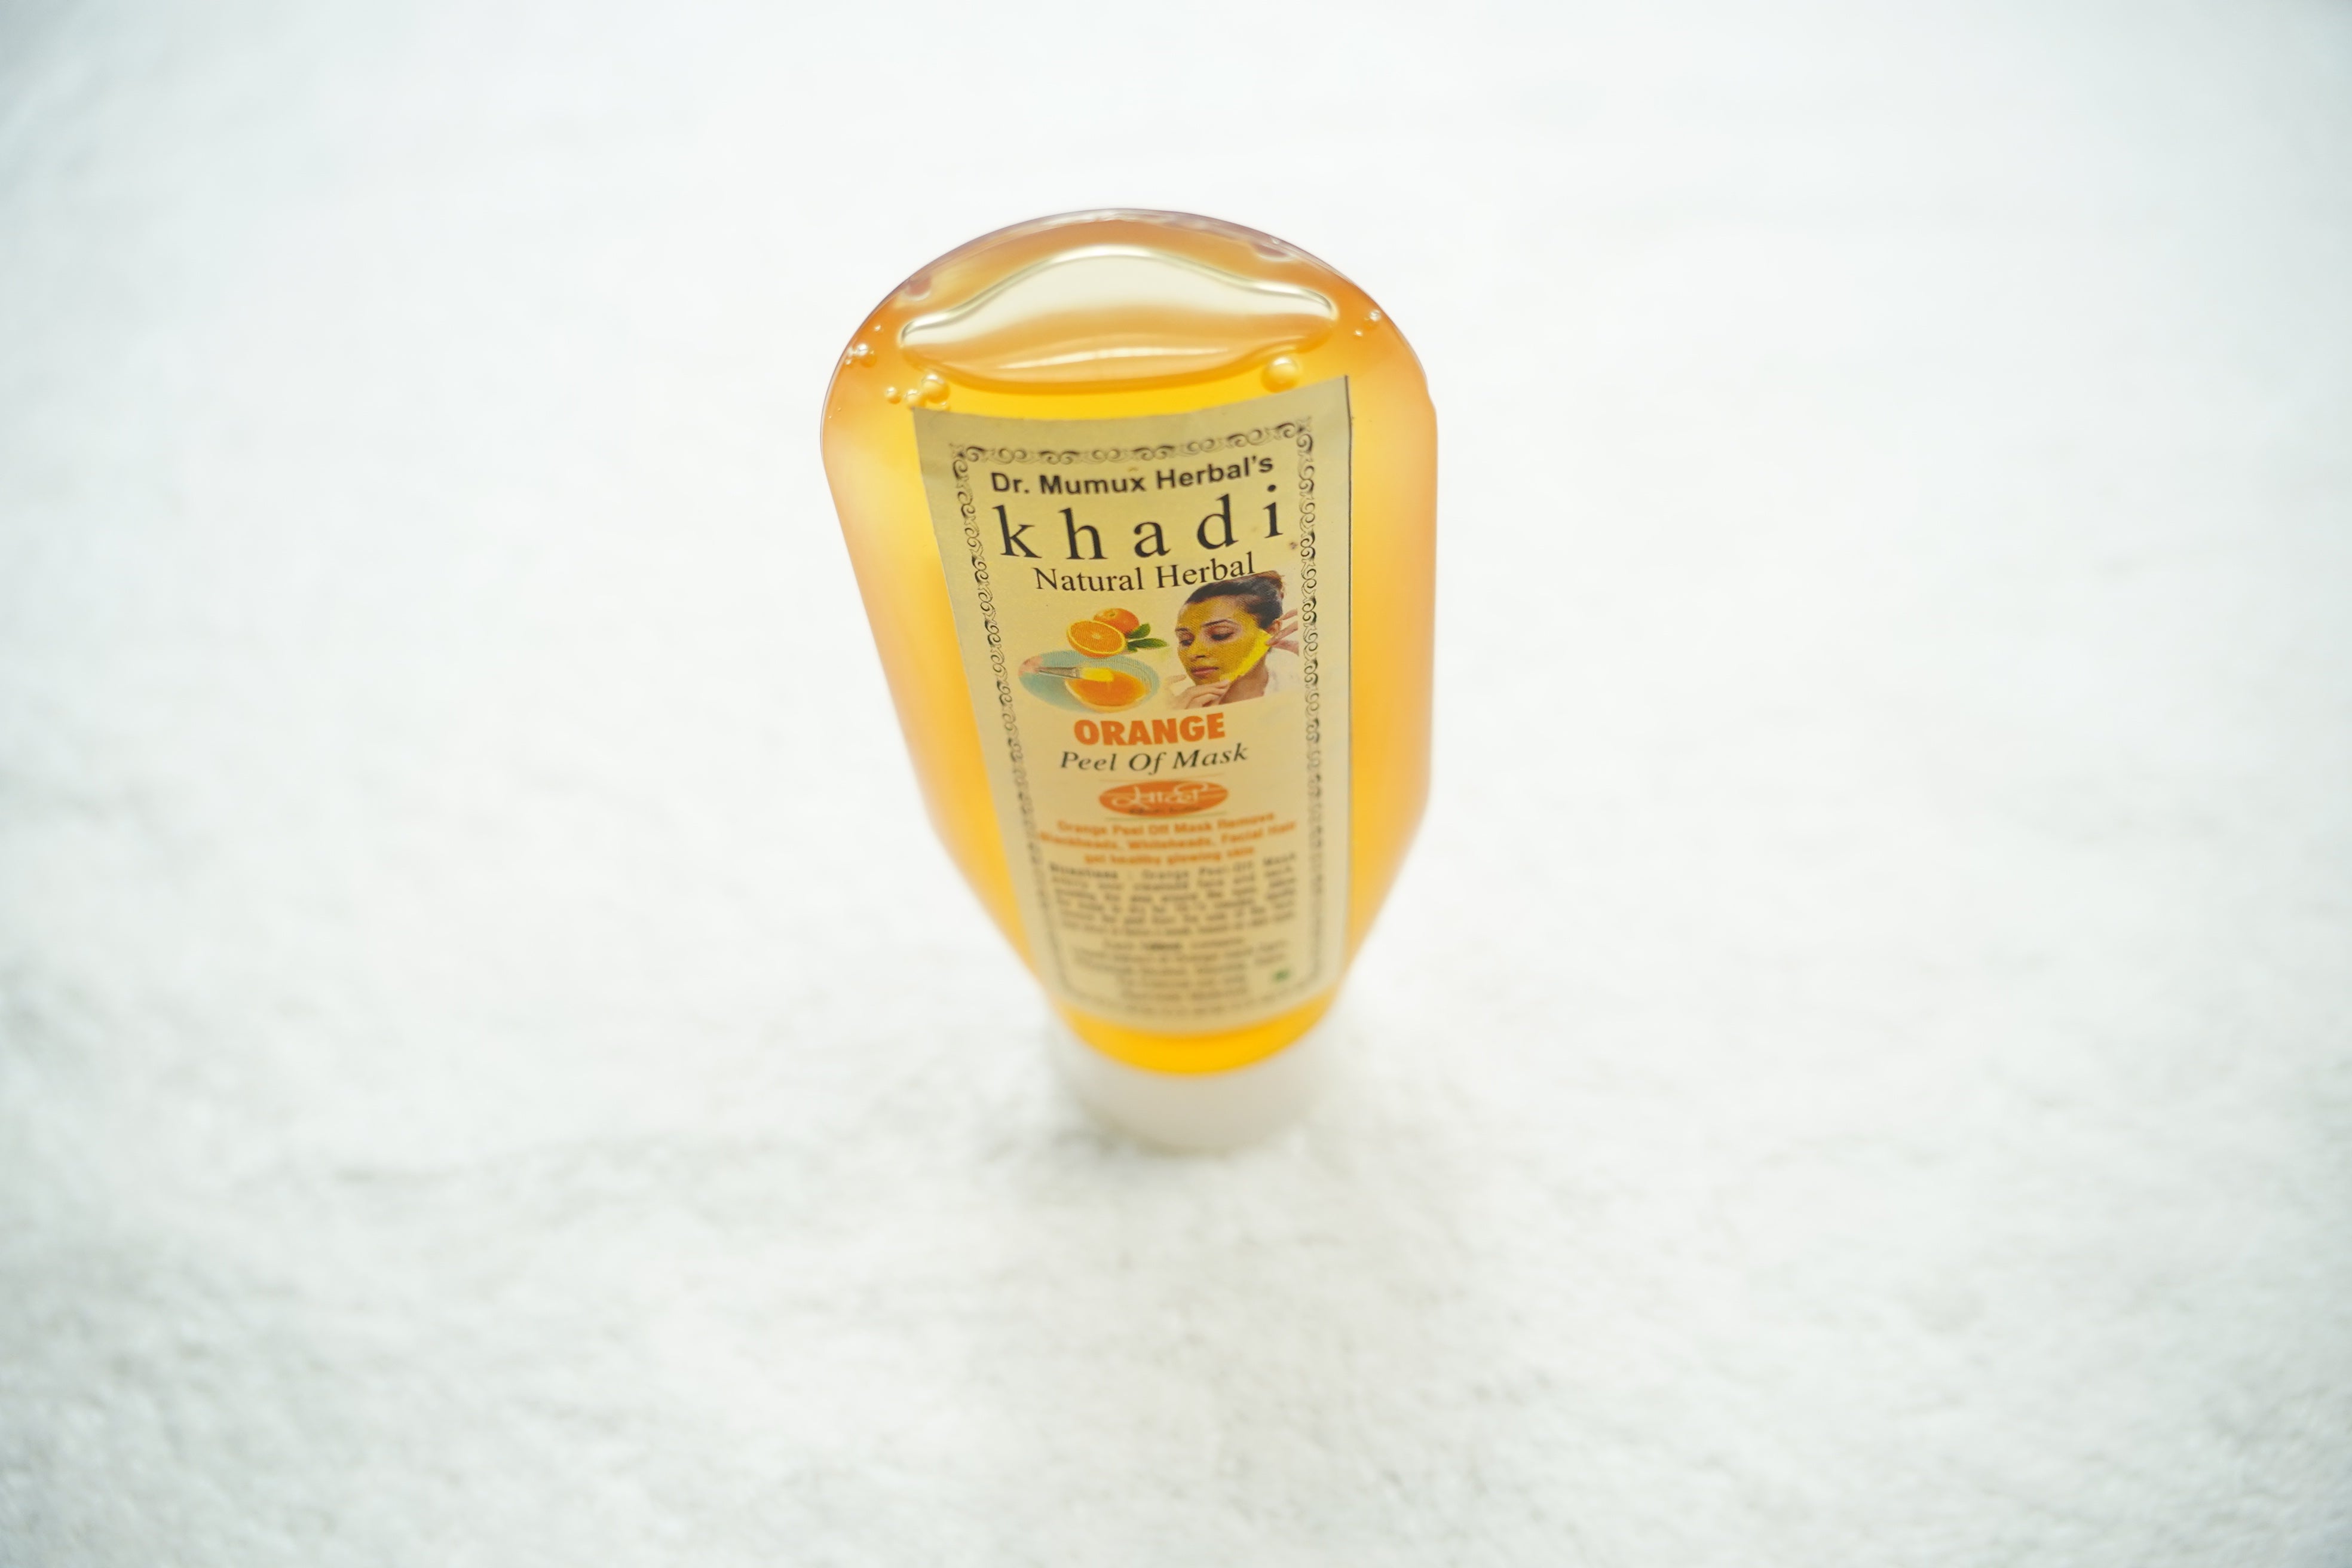 Khadi India: Natural Herbal Orange Peel-Off Mask - Nourish Your Skin, Naturally! 200ml